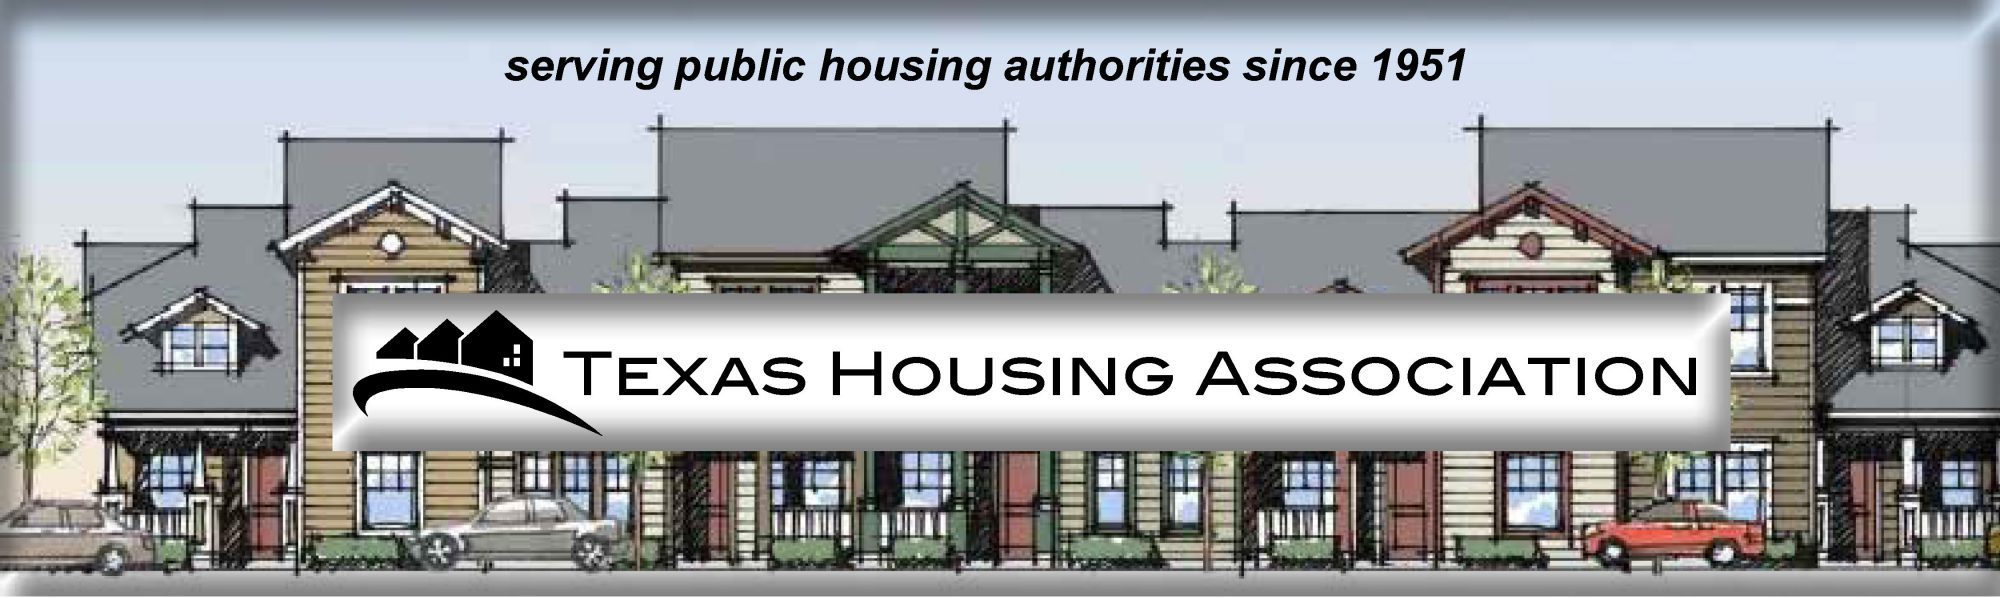 Texas Housing Association